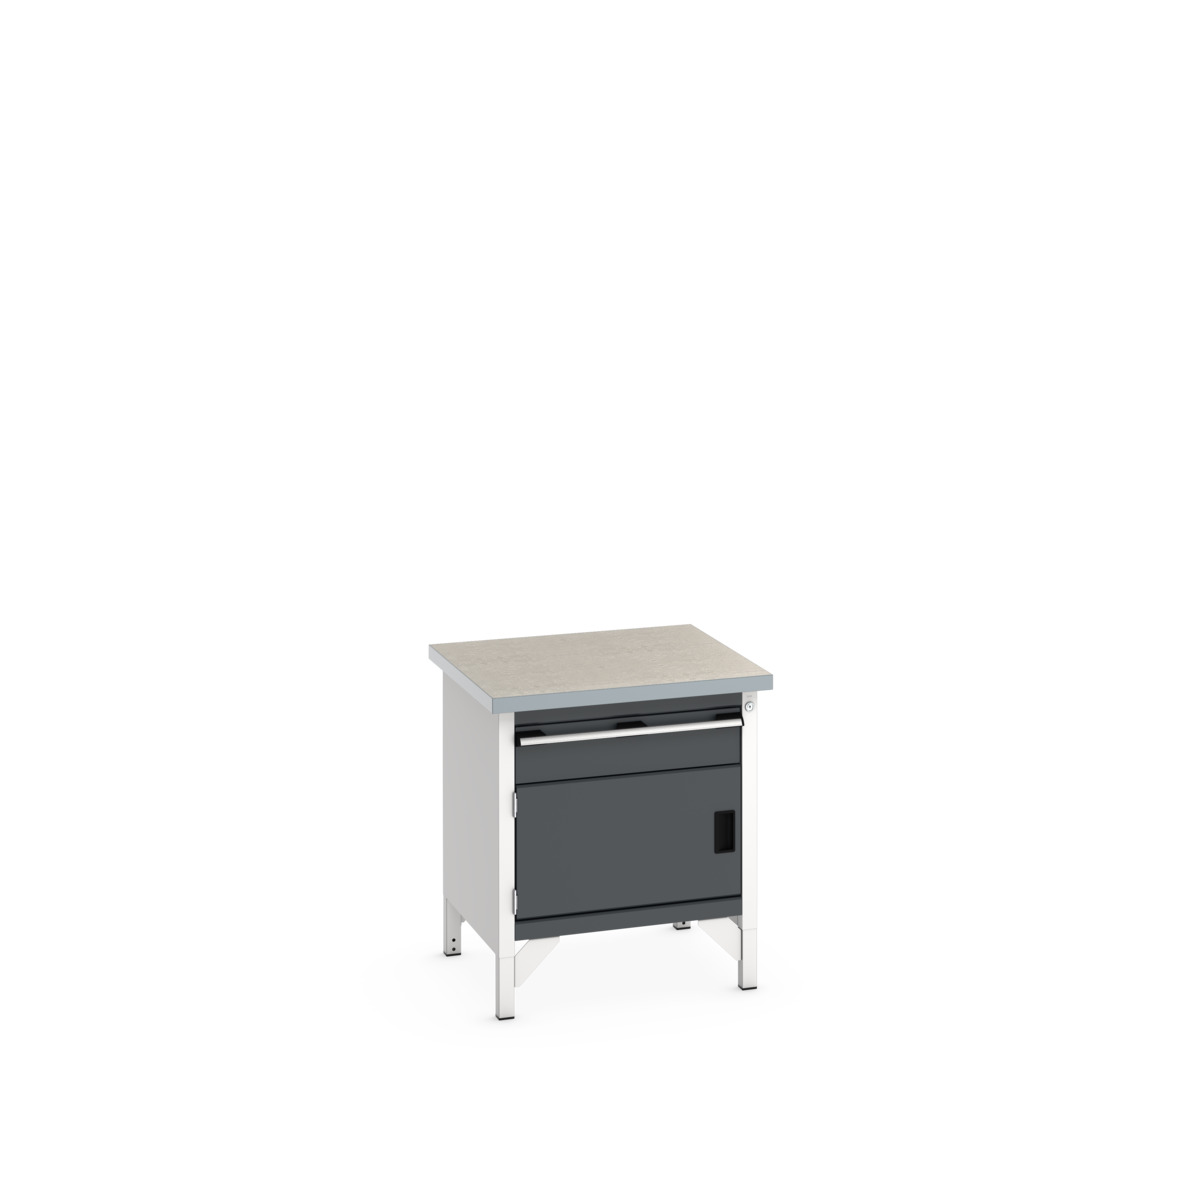 41002009.19V - cubio storage bench (lino)